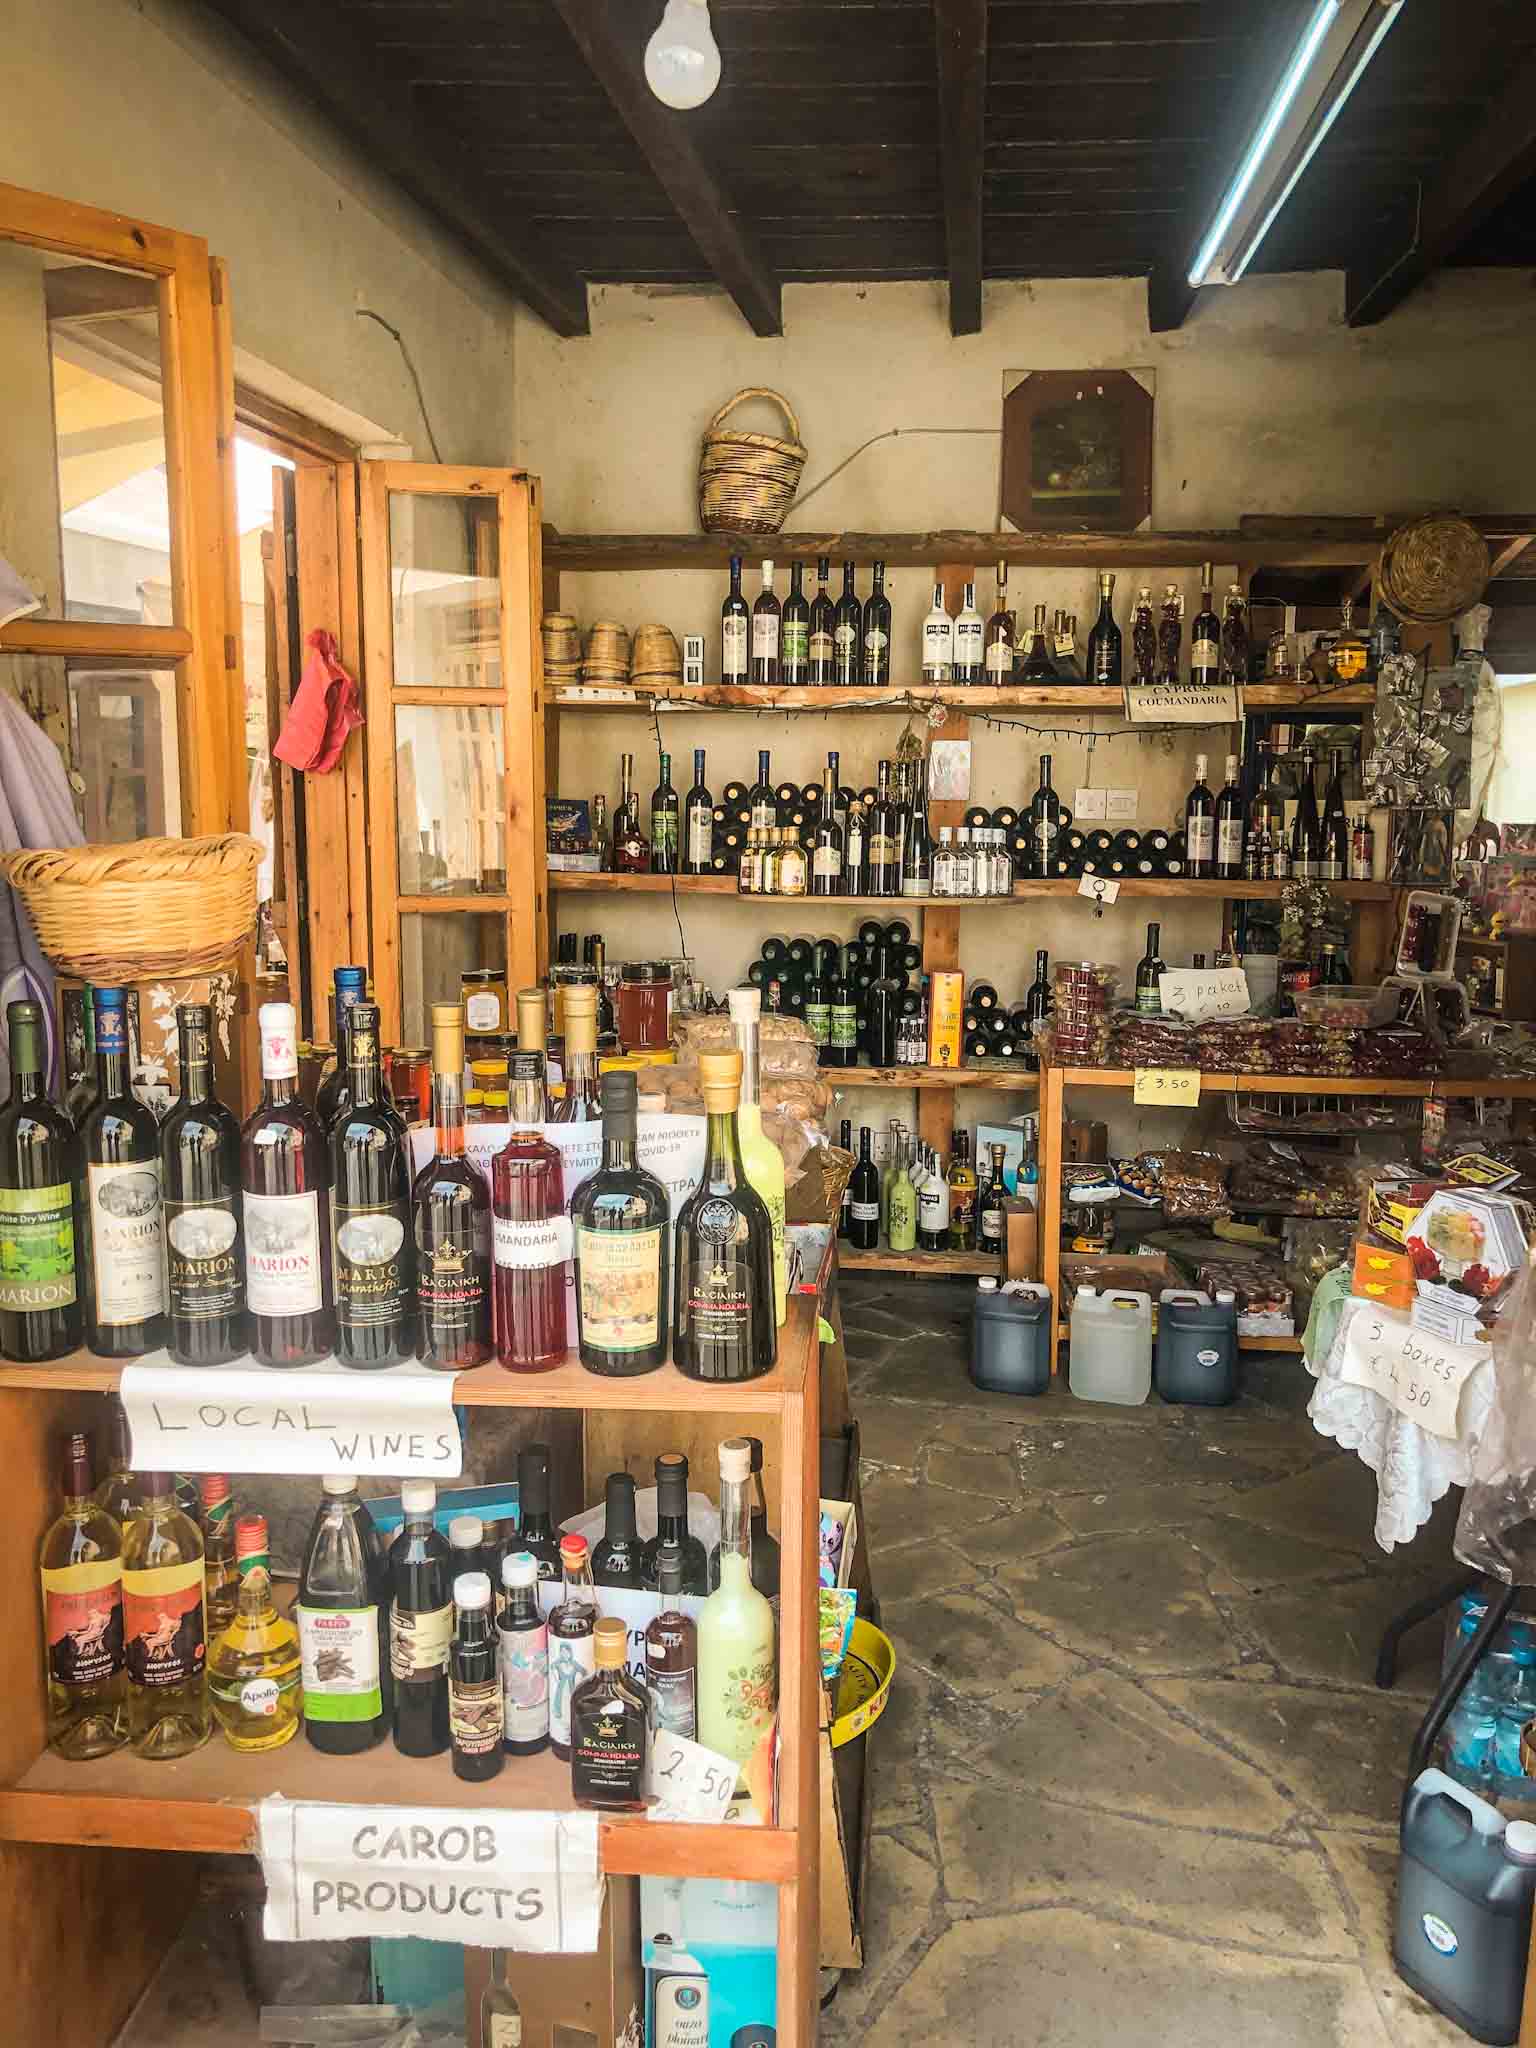 Local goods' shop in Omodos village